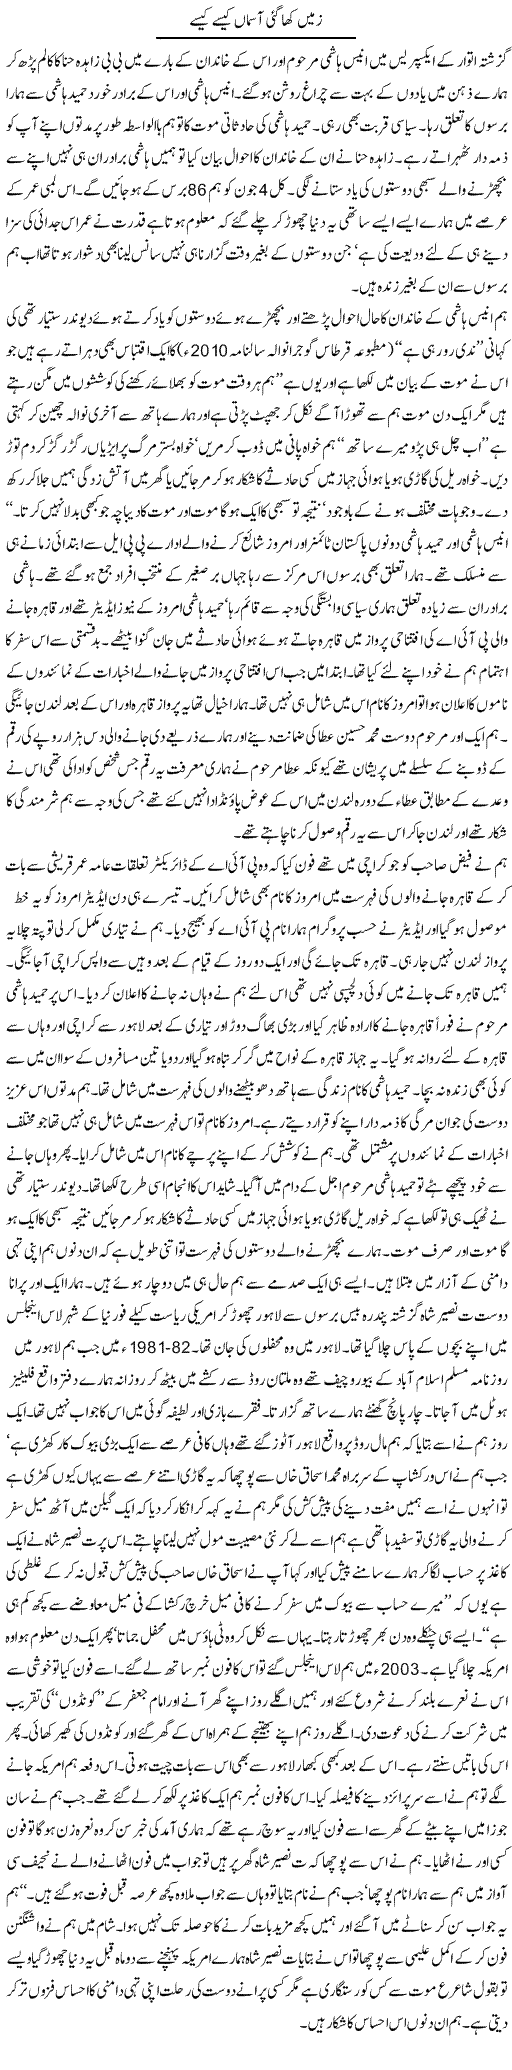 Zameen Asmaan Express Column Hameed Akhtar 3 June 2010